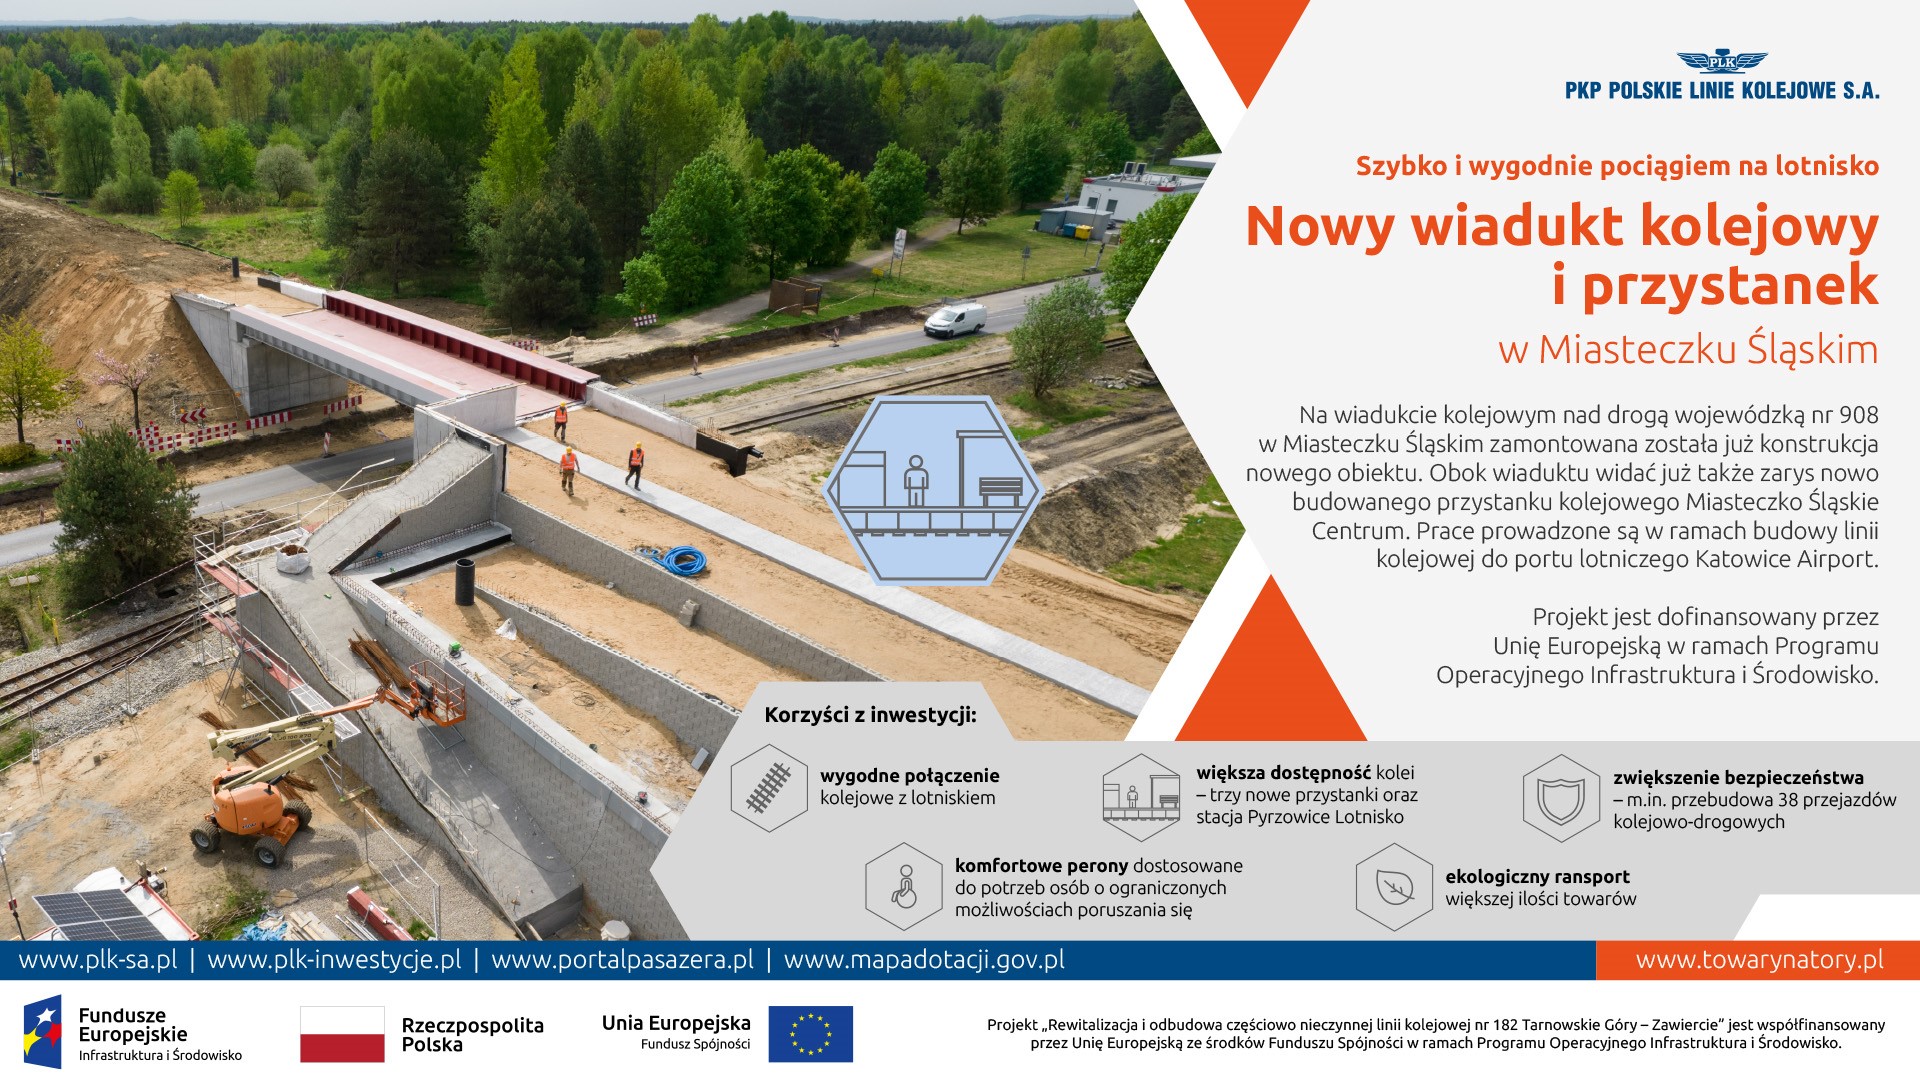 Infografika przedstawia nowo wybudowany wiadukt kolejowy w Miasteczku Śląskim, oraz najważniejsze informacje o nim.